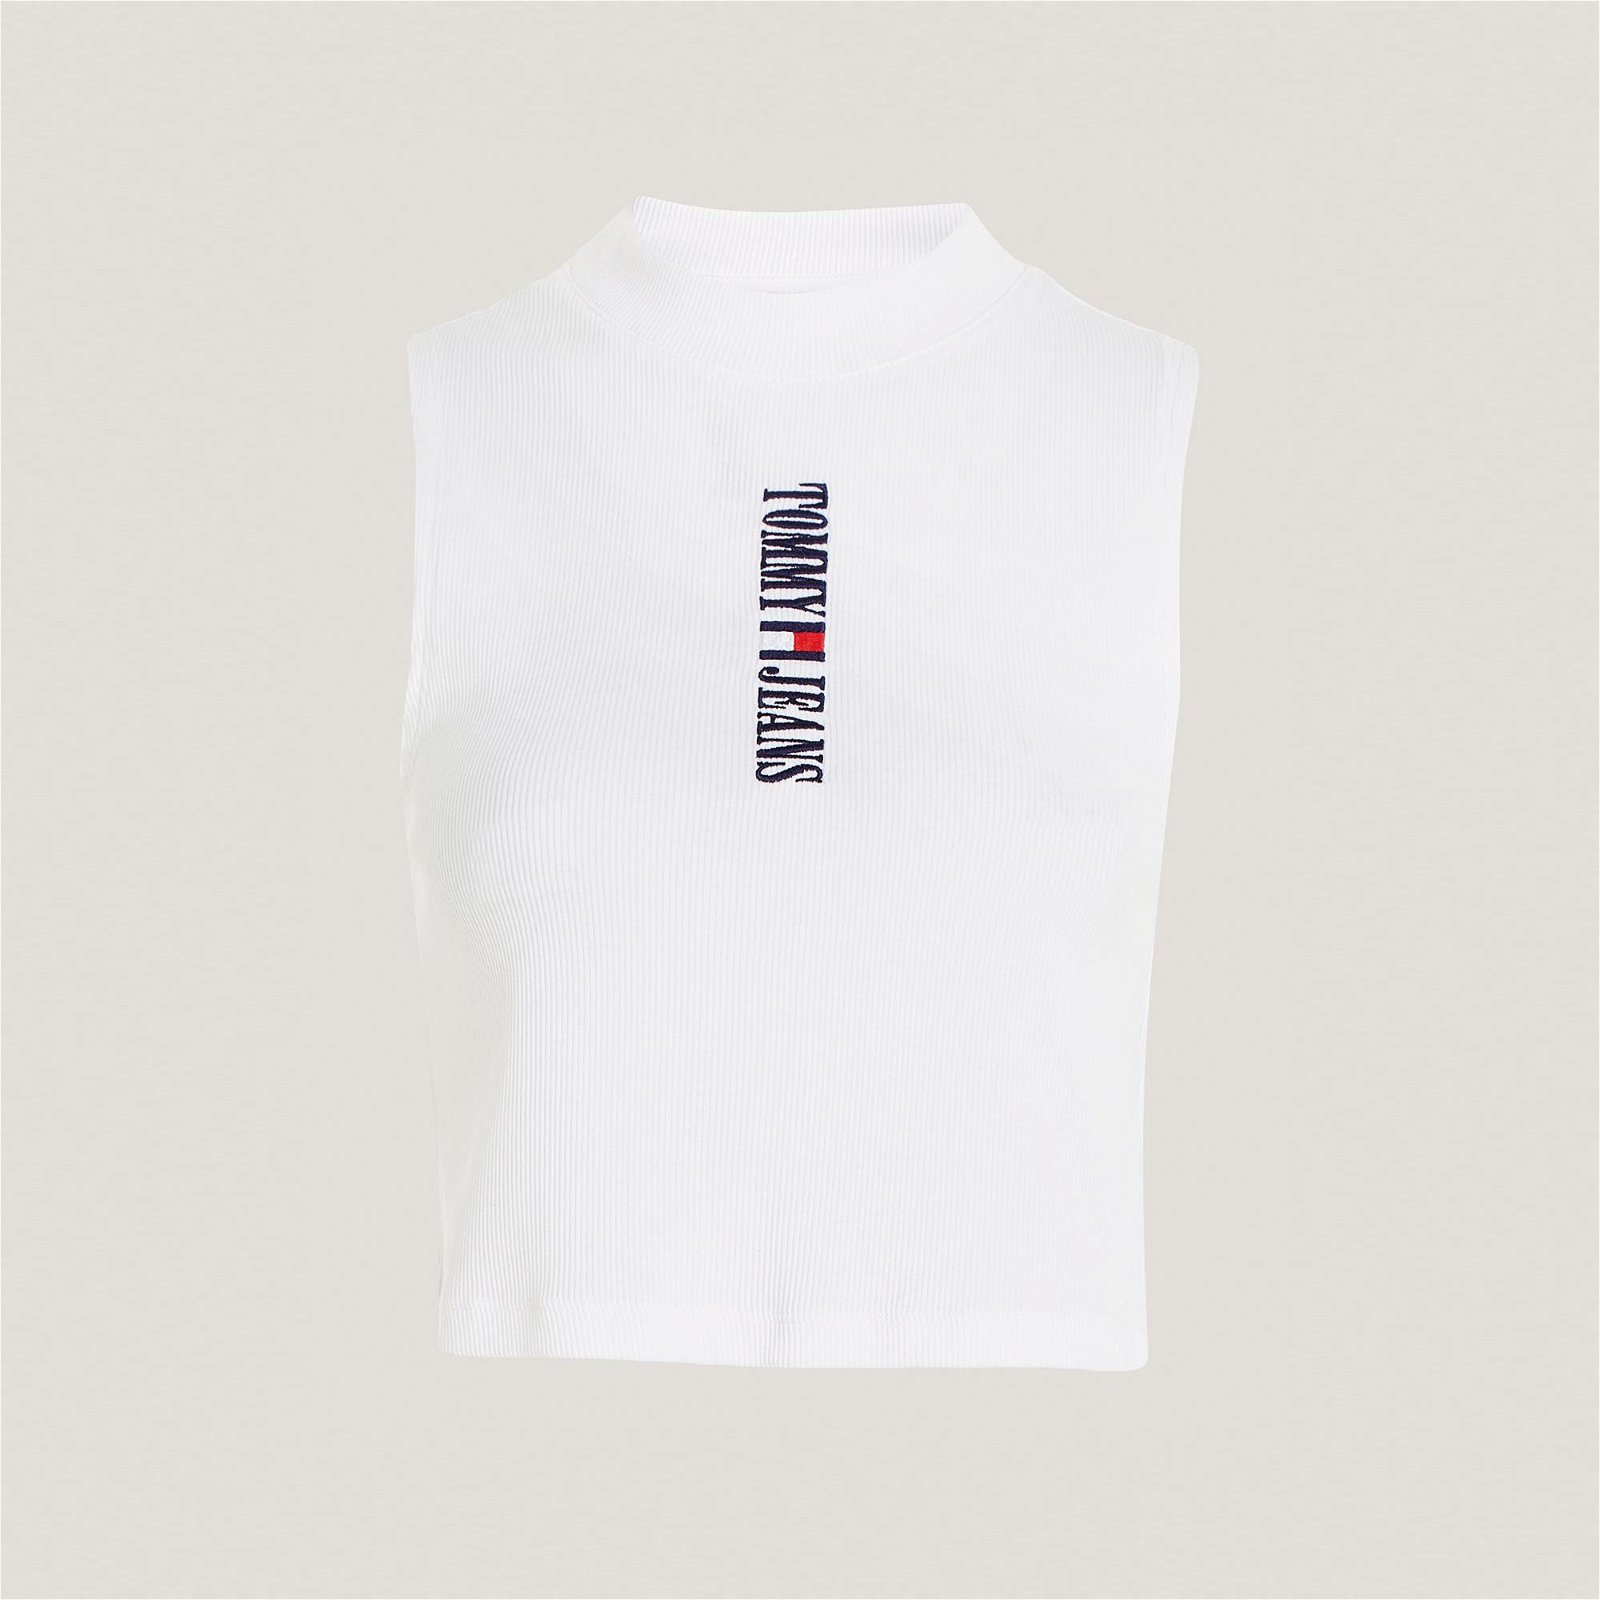 Tommy Jeans Archive Tank Kadın Beyaz Kolsuz T-Shirt